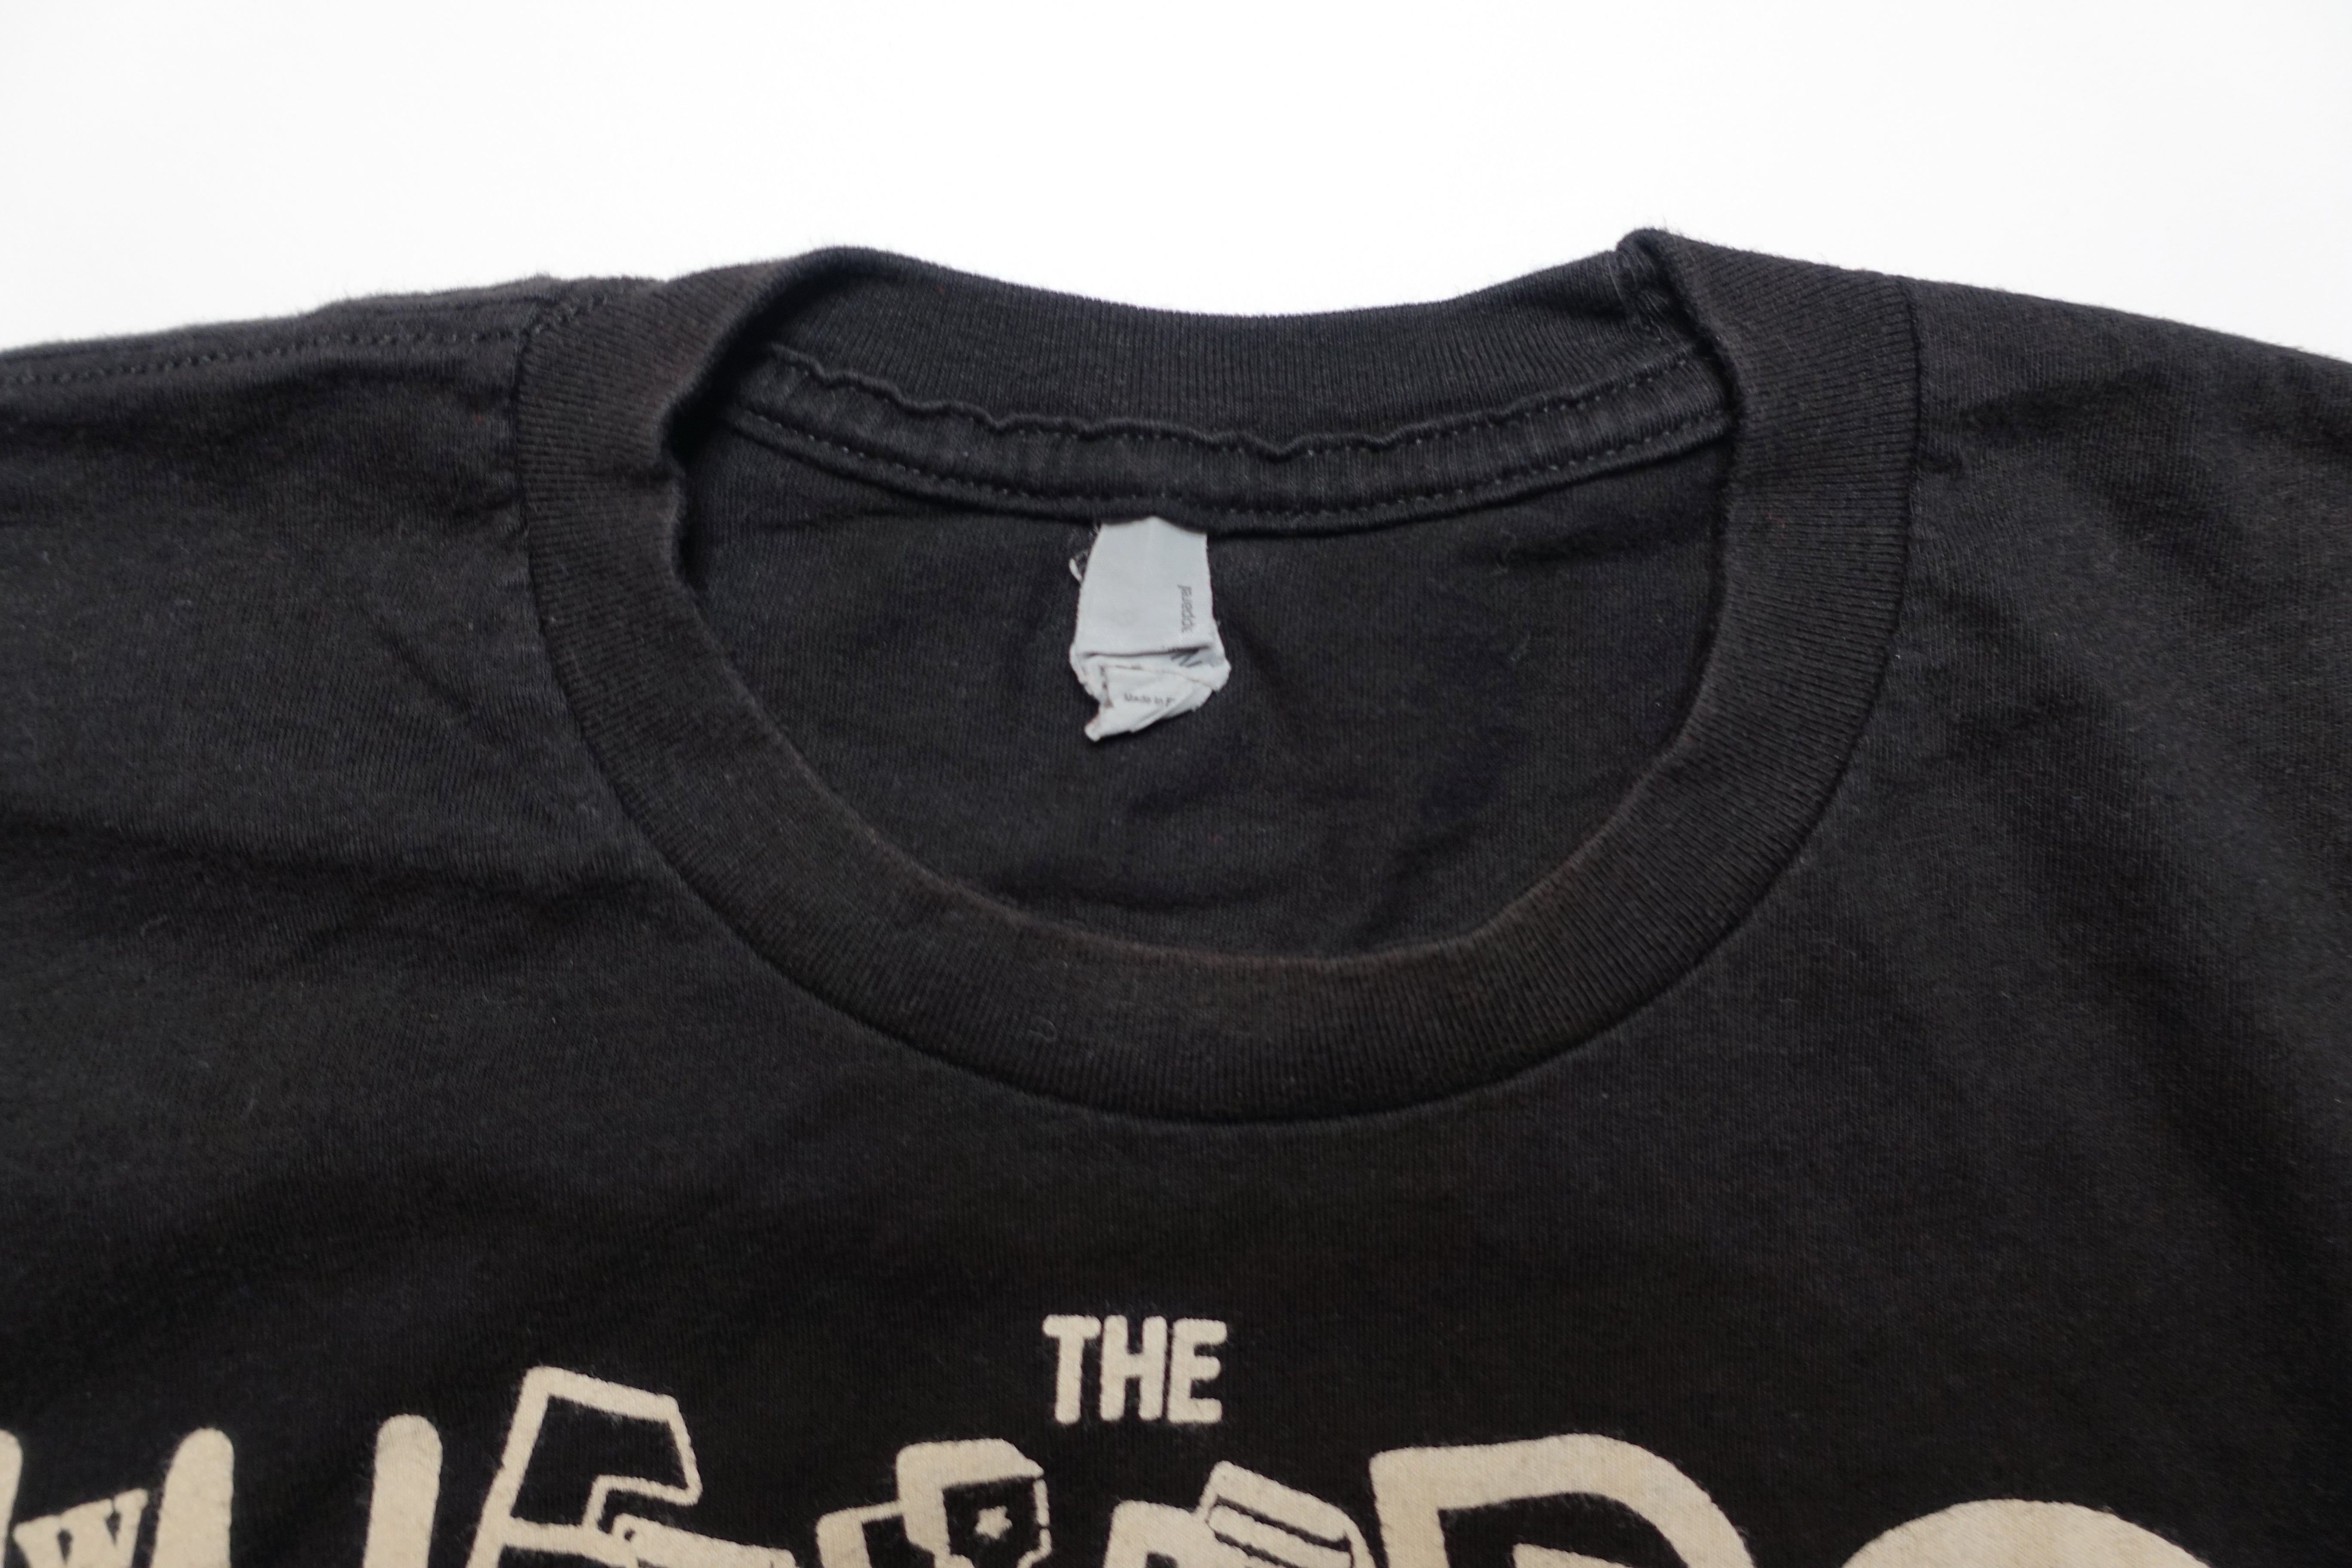 the Weirdos - John Denney Close Up shirt Size Small